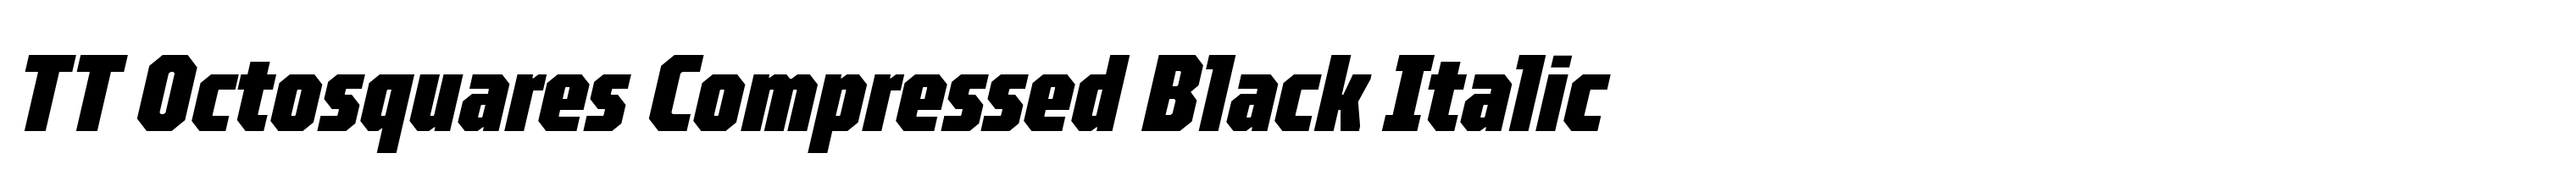 TT Octosquares Compressed Black Italic